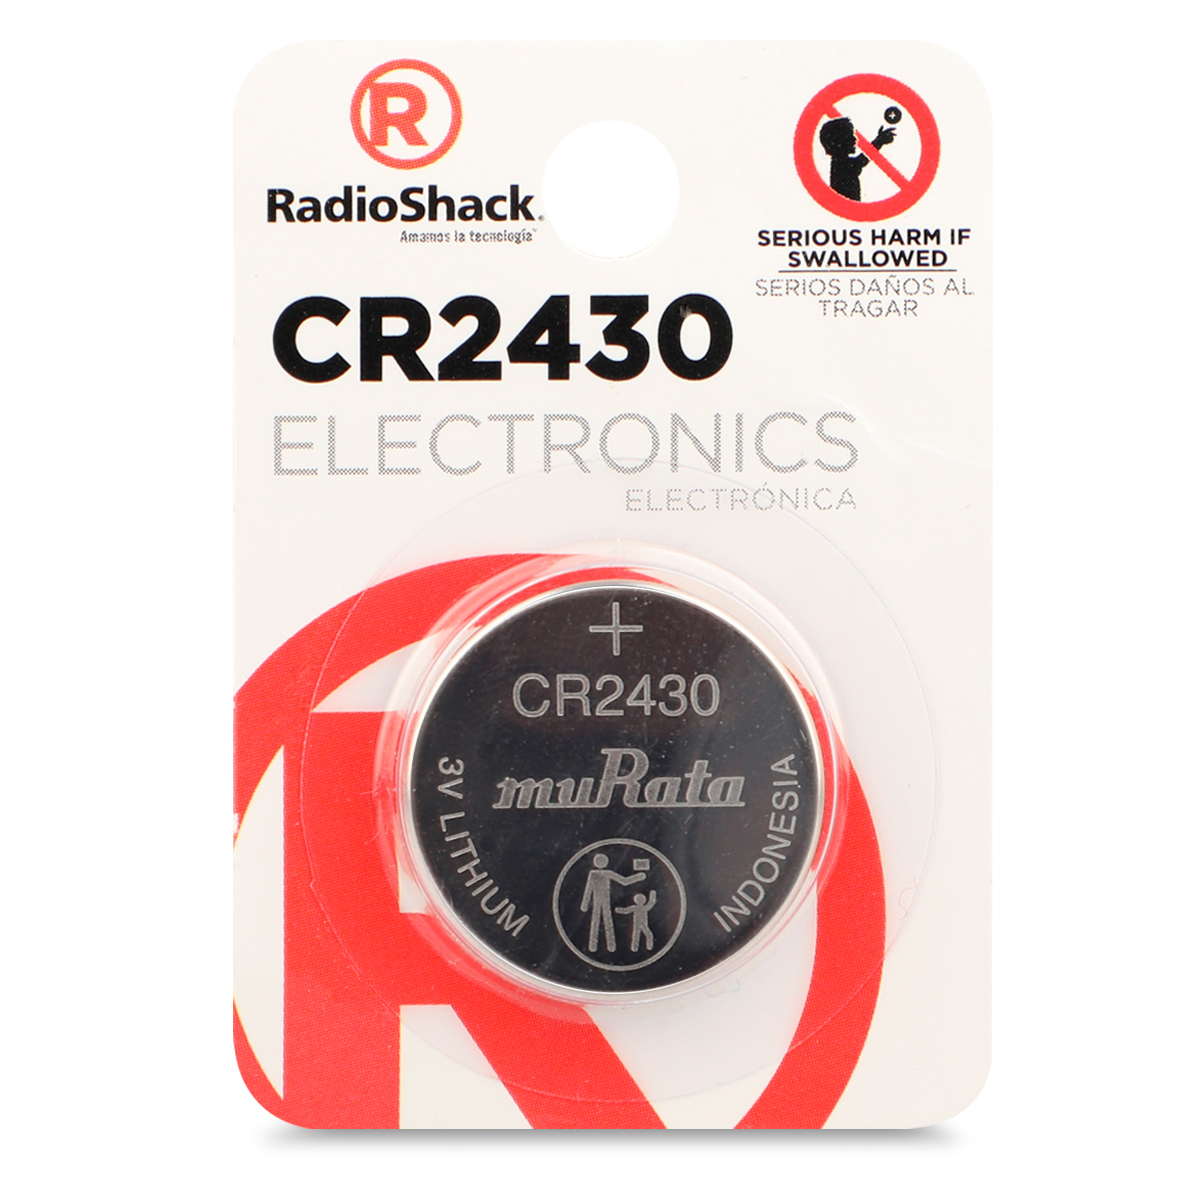 Pila Botón de Litio CR2430 RadioShack, Pilas Litio, Pilas y Baterías, Originales RadioShack, Todas, Categoría